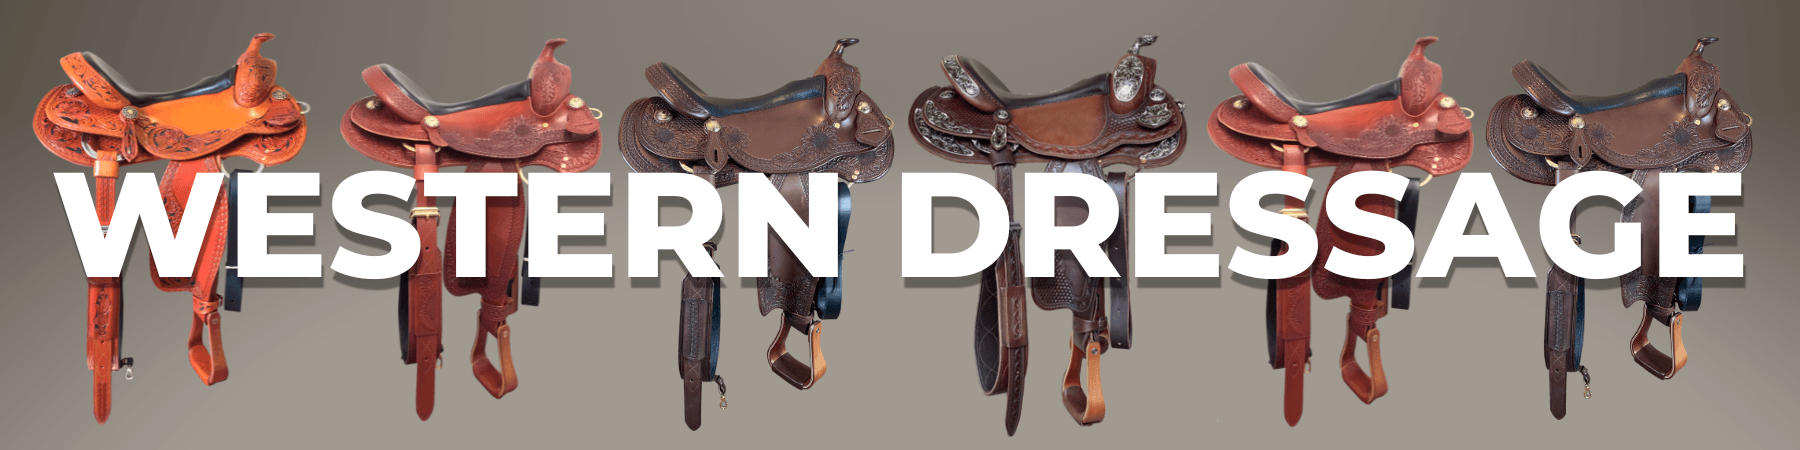 western dresssage saddle overview